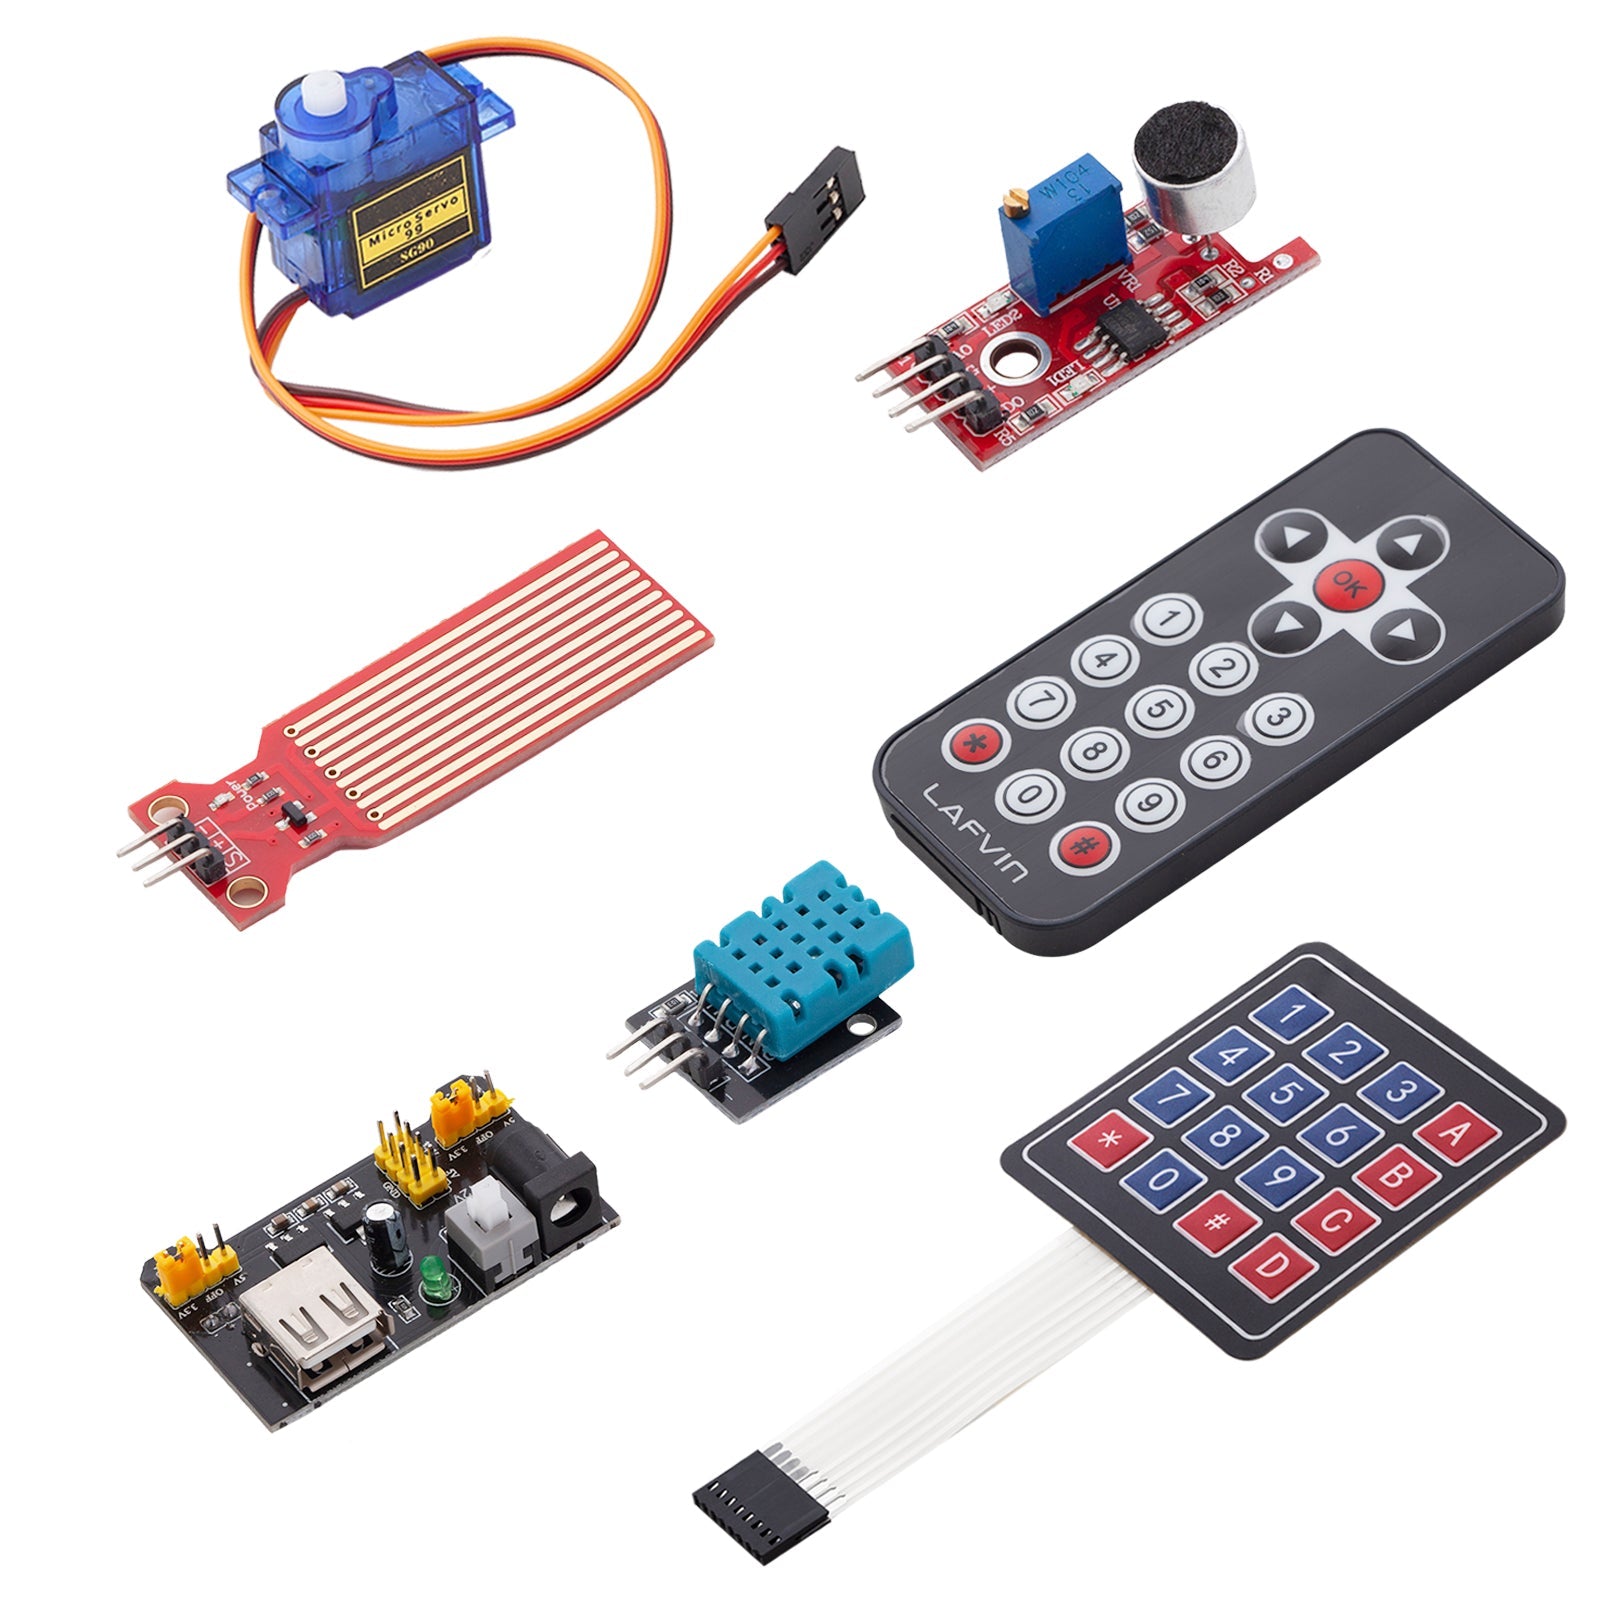 Kit de démarrage pour programmation Arduino